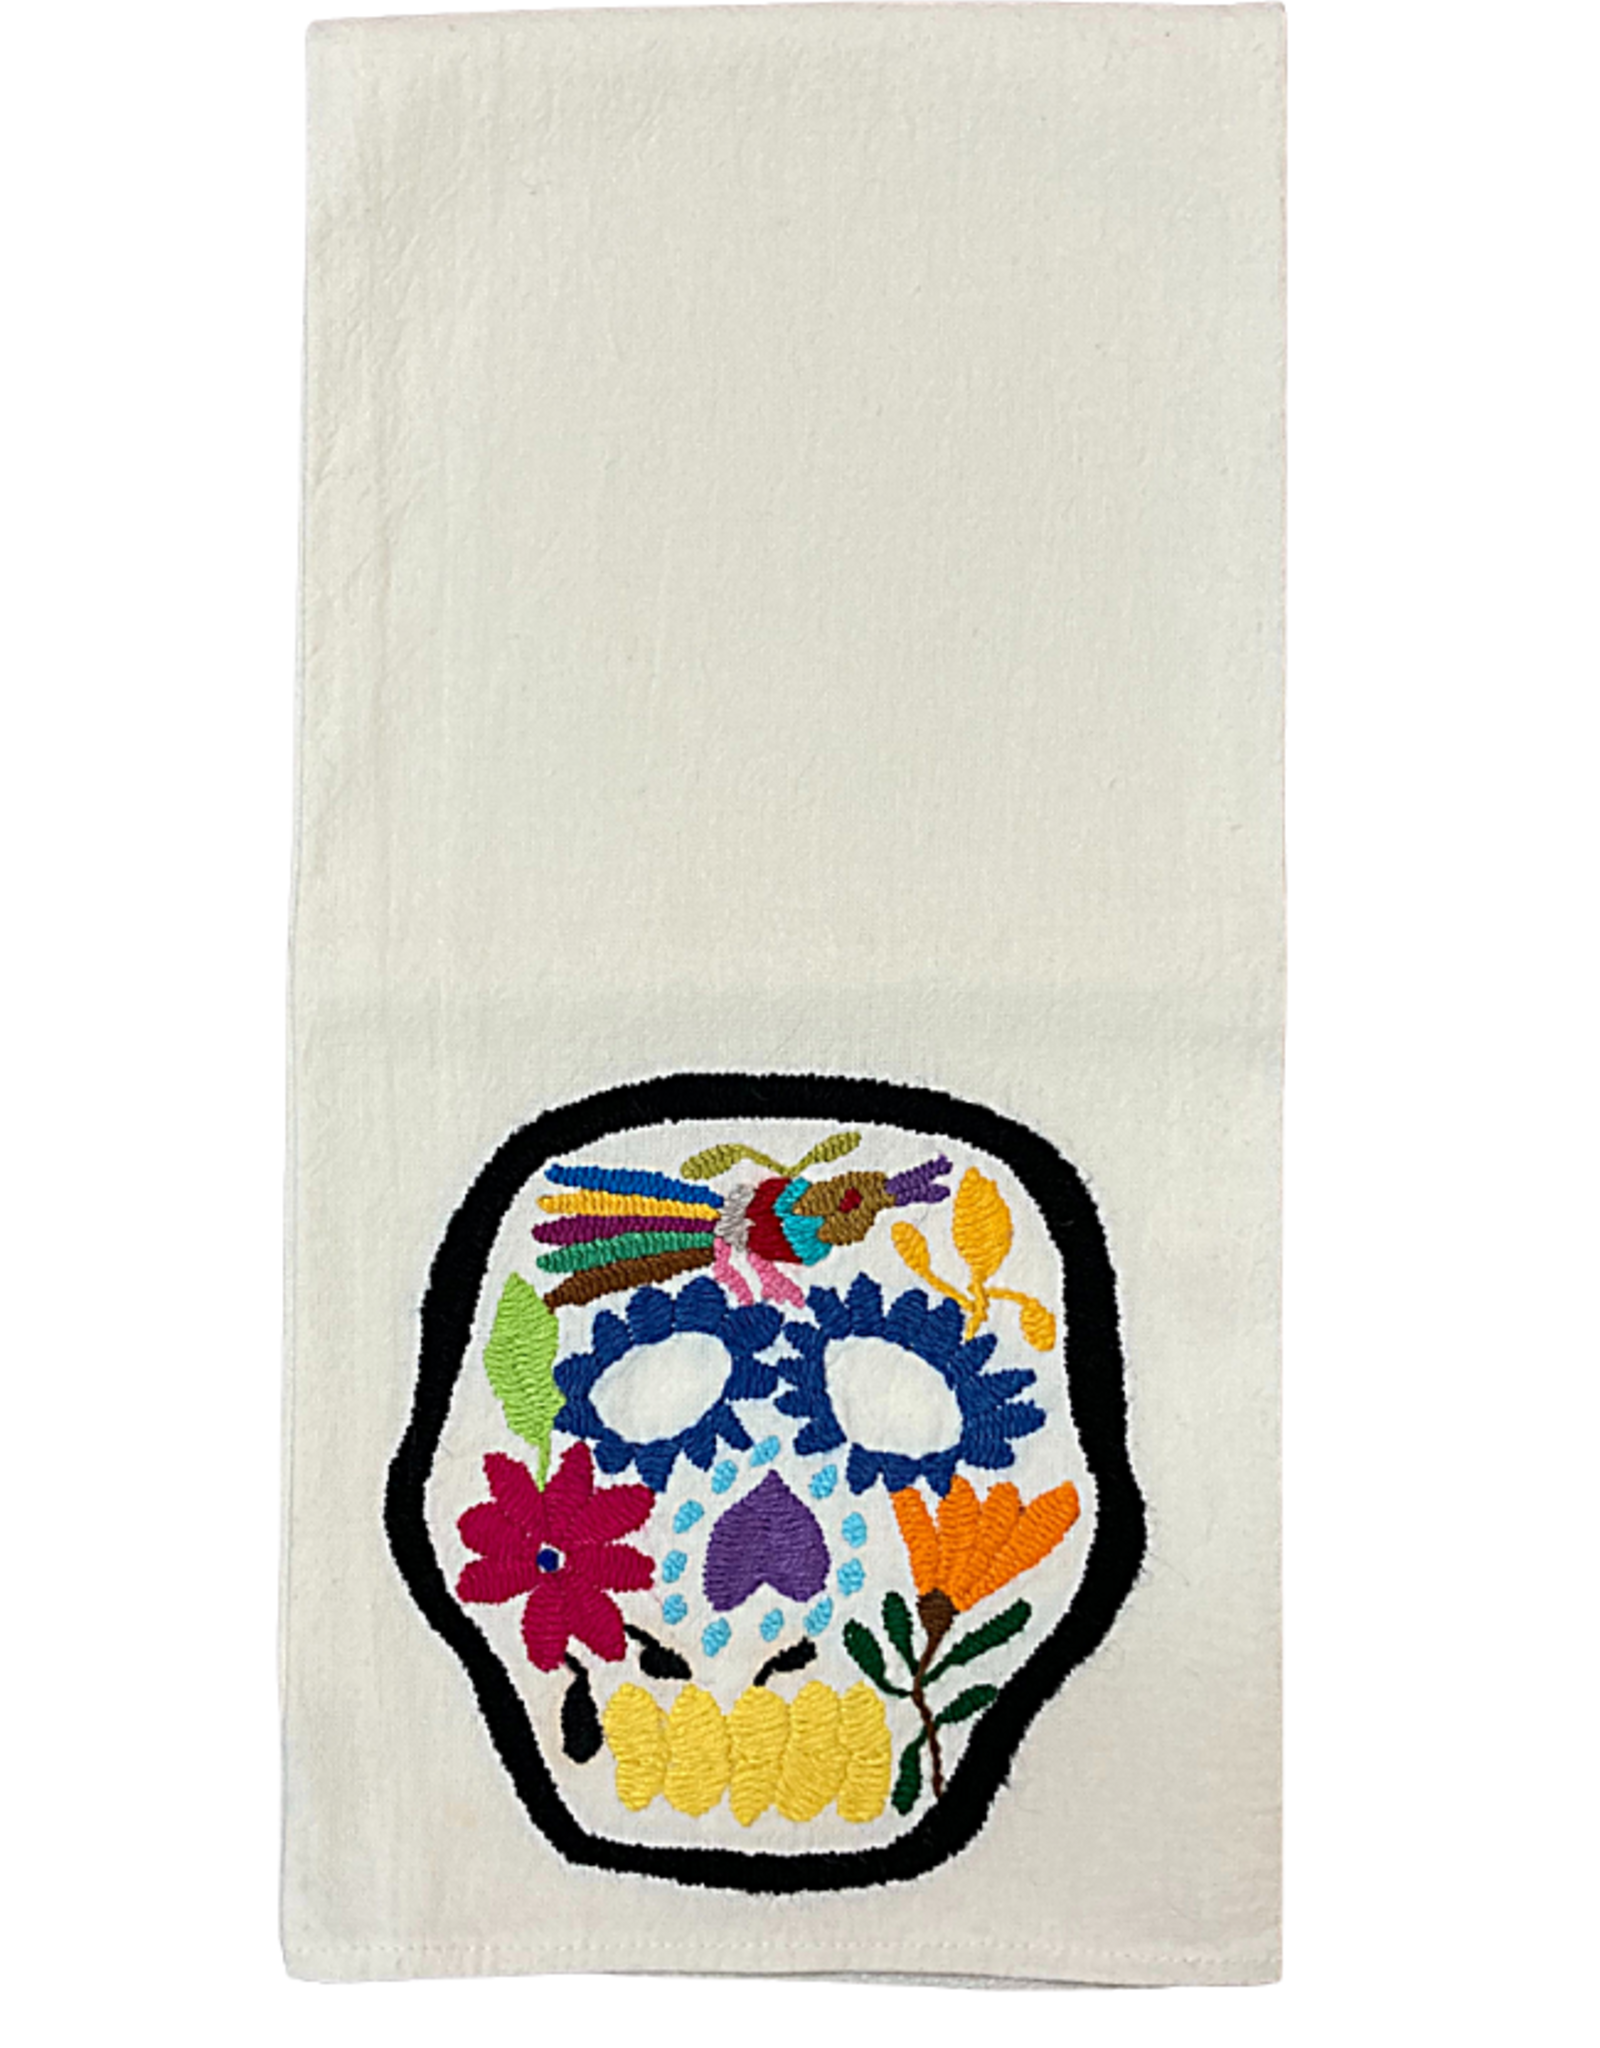 Nativa Skull Embroidered Tea Towel - Cream